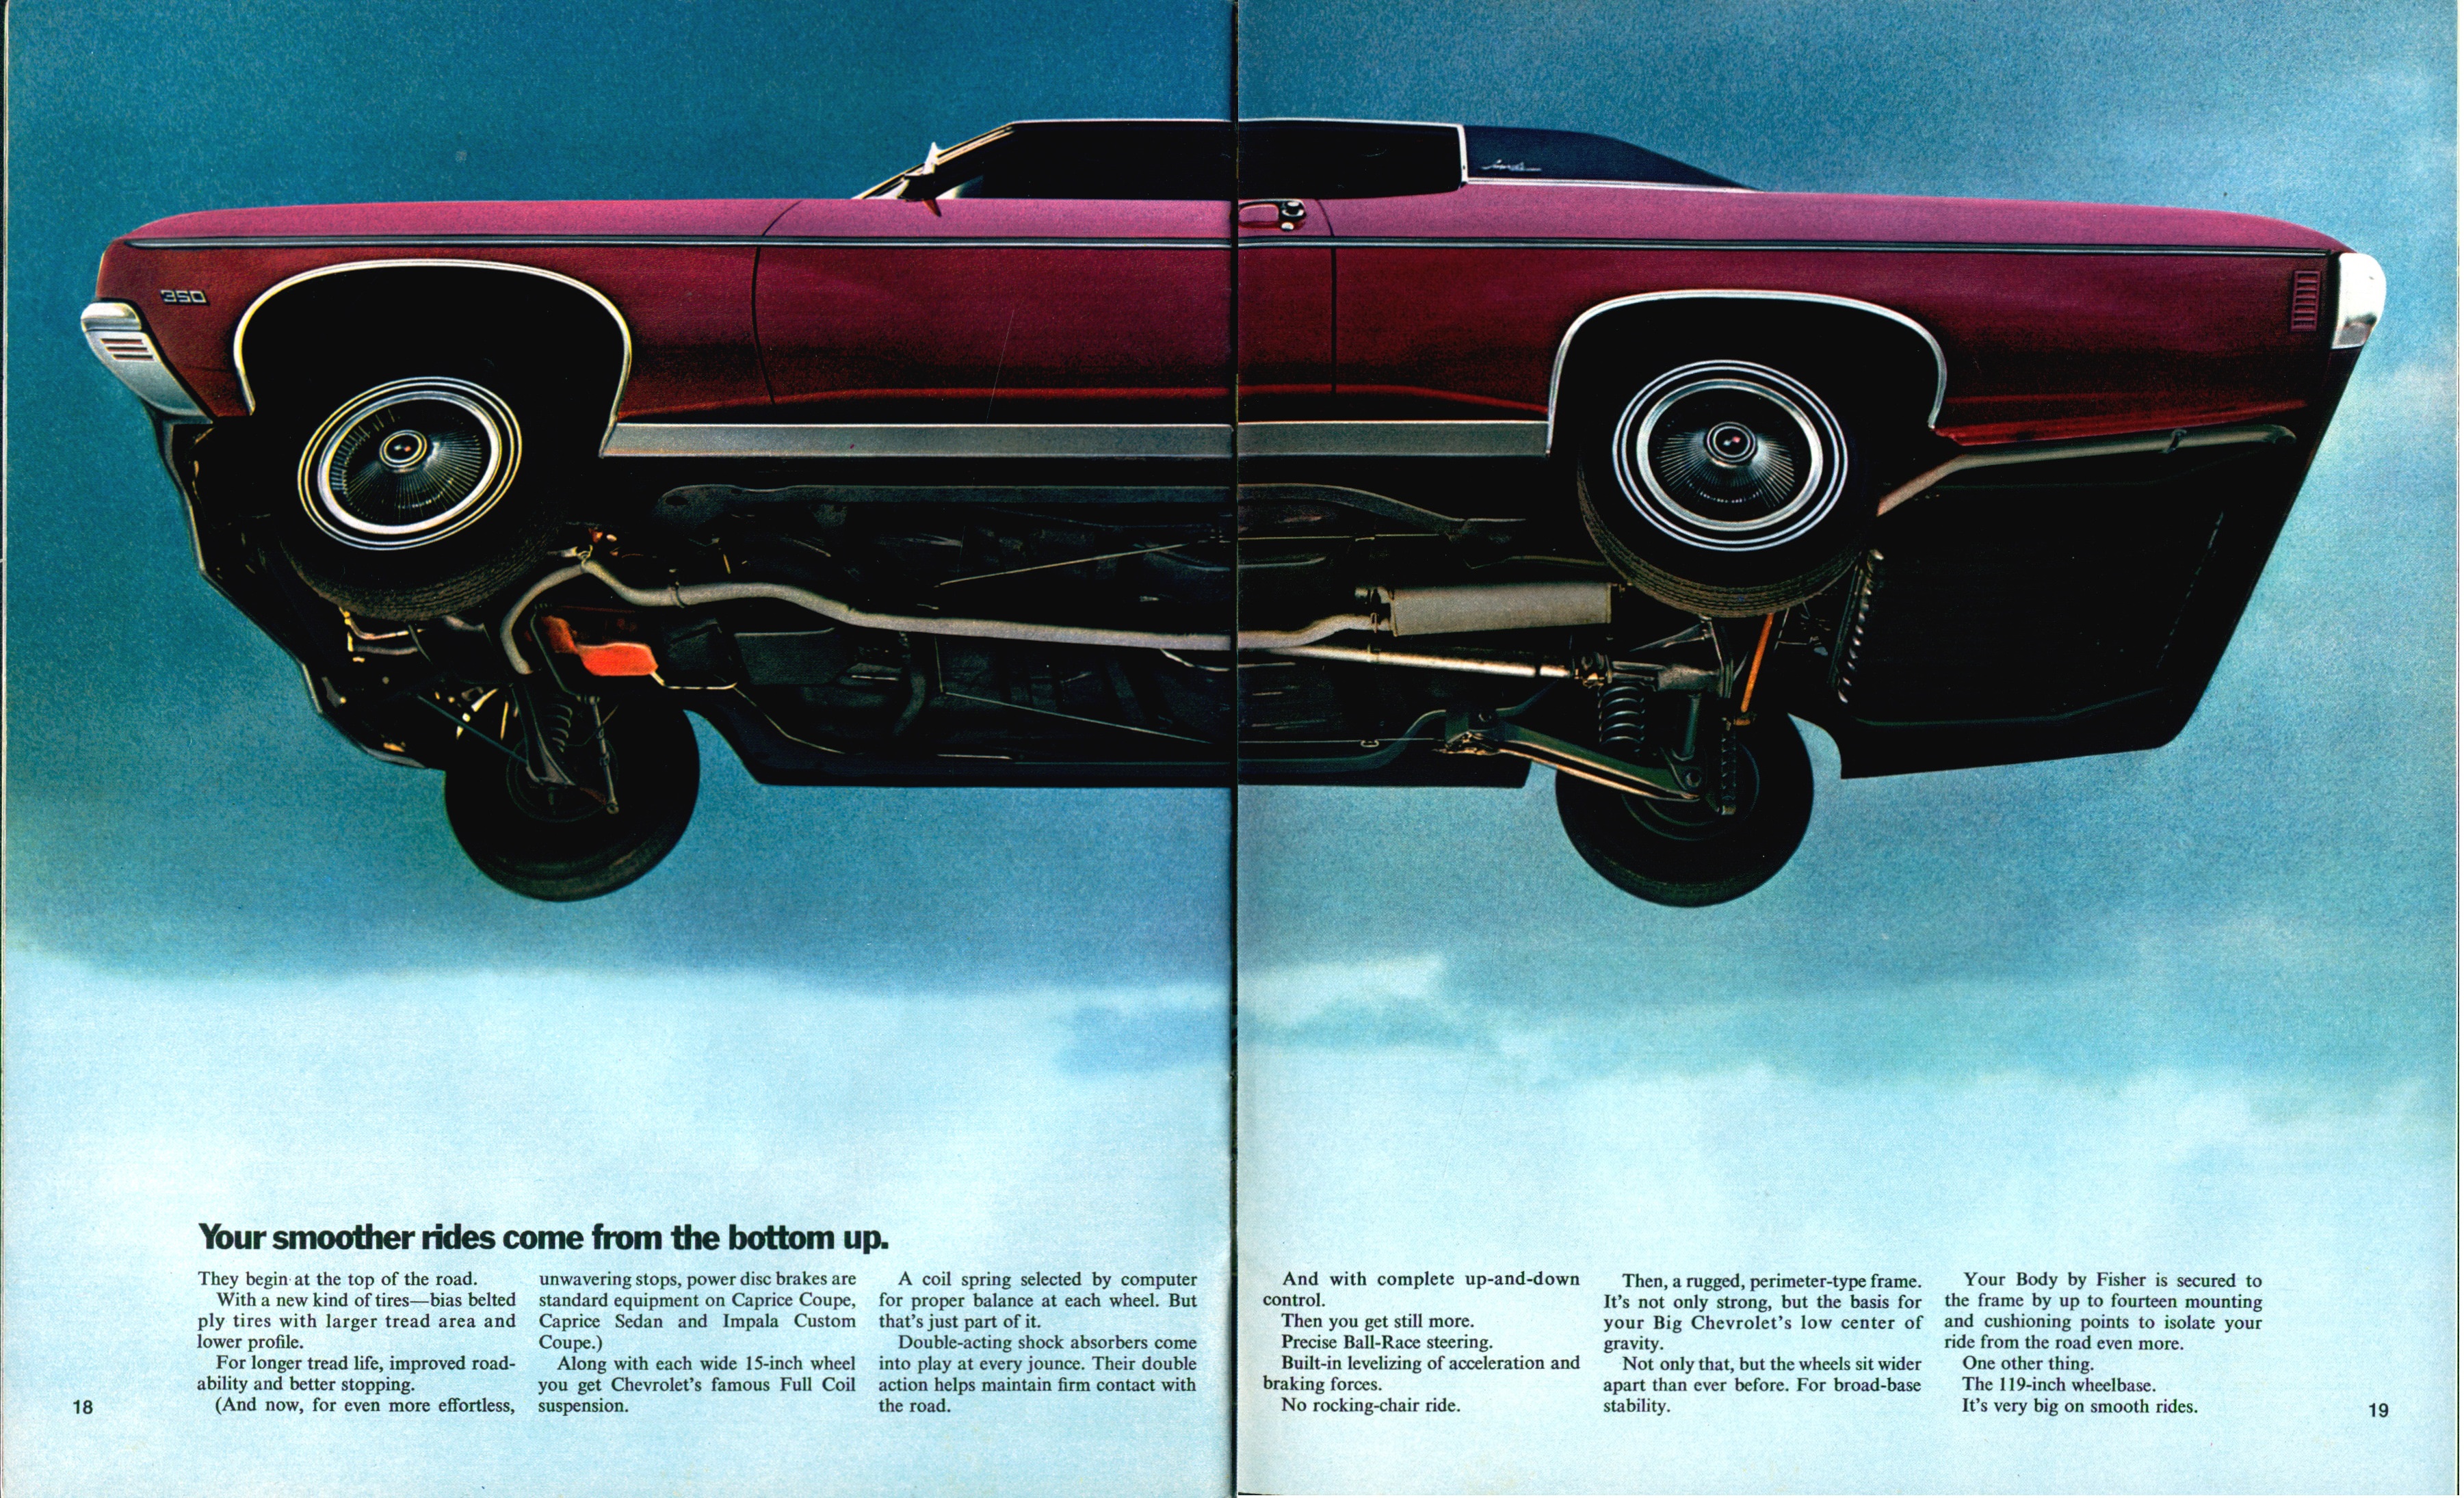 1970 Chevrolet Full Size Brochure (R-1) 18-19